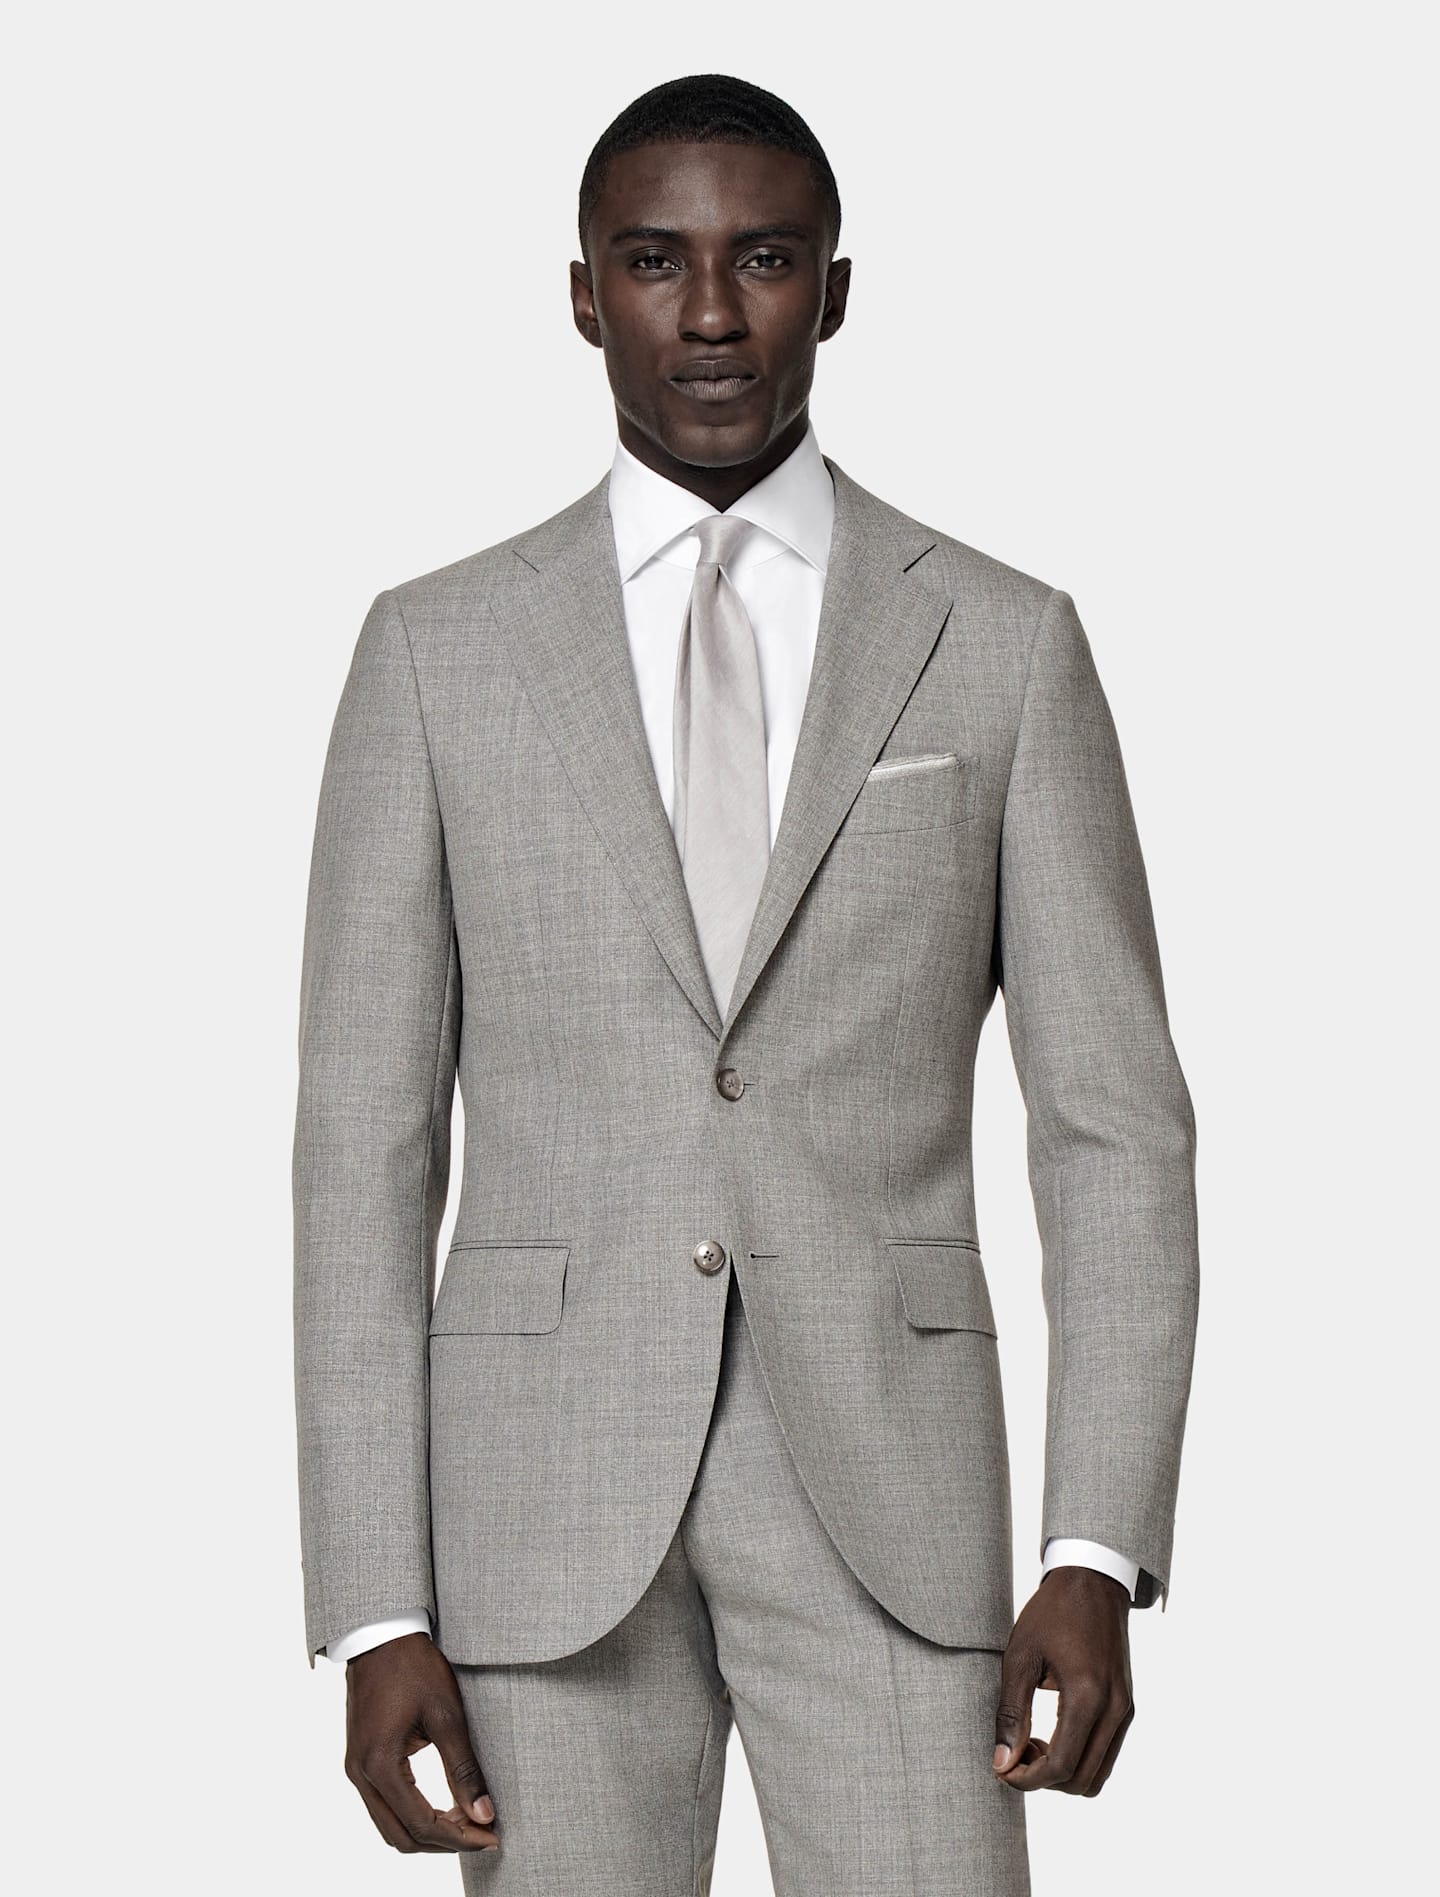 灰色单排扣西装搭配白色衬衫和灰色丝绸领带。